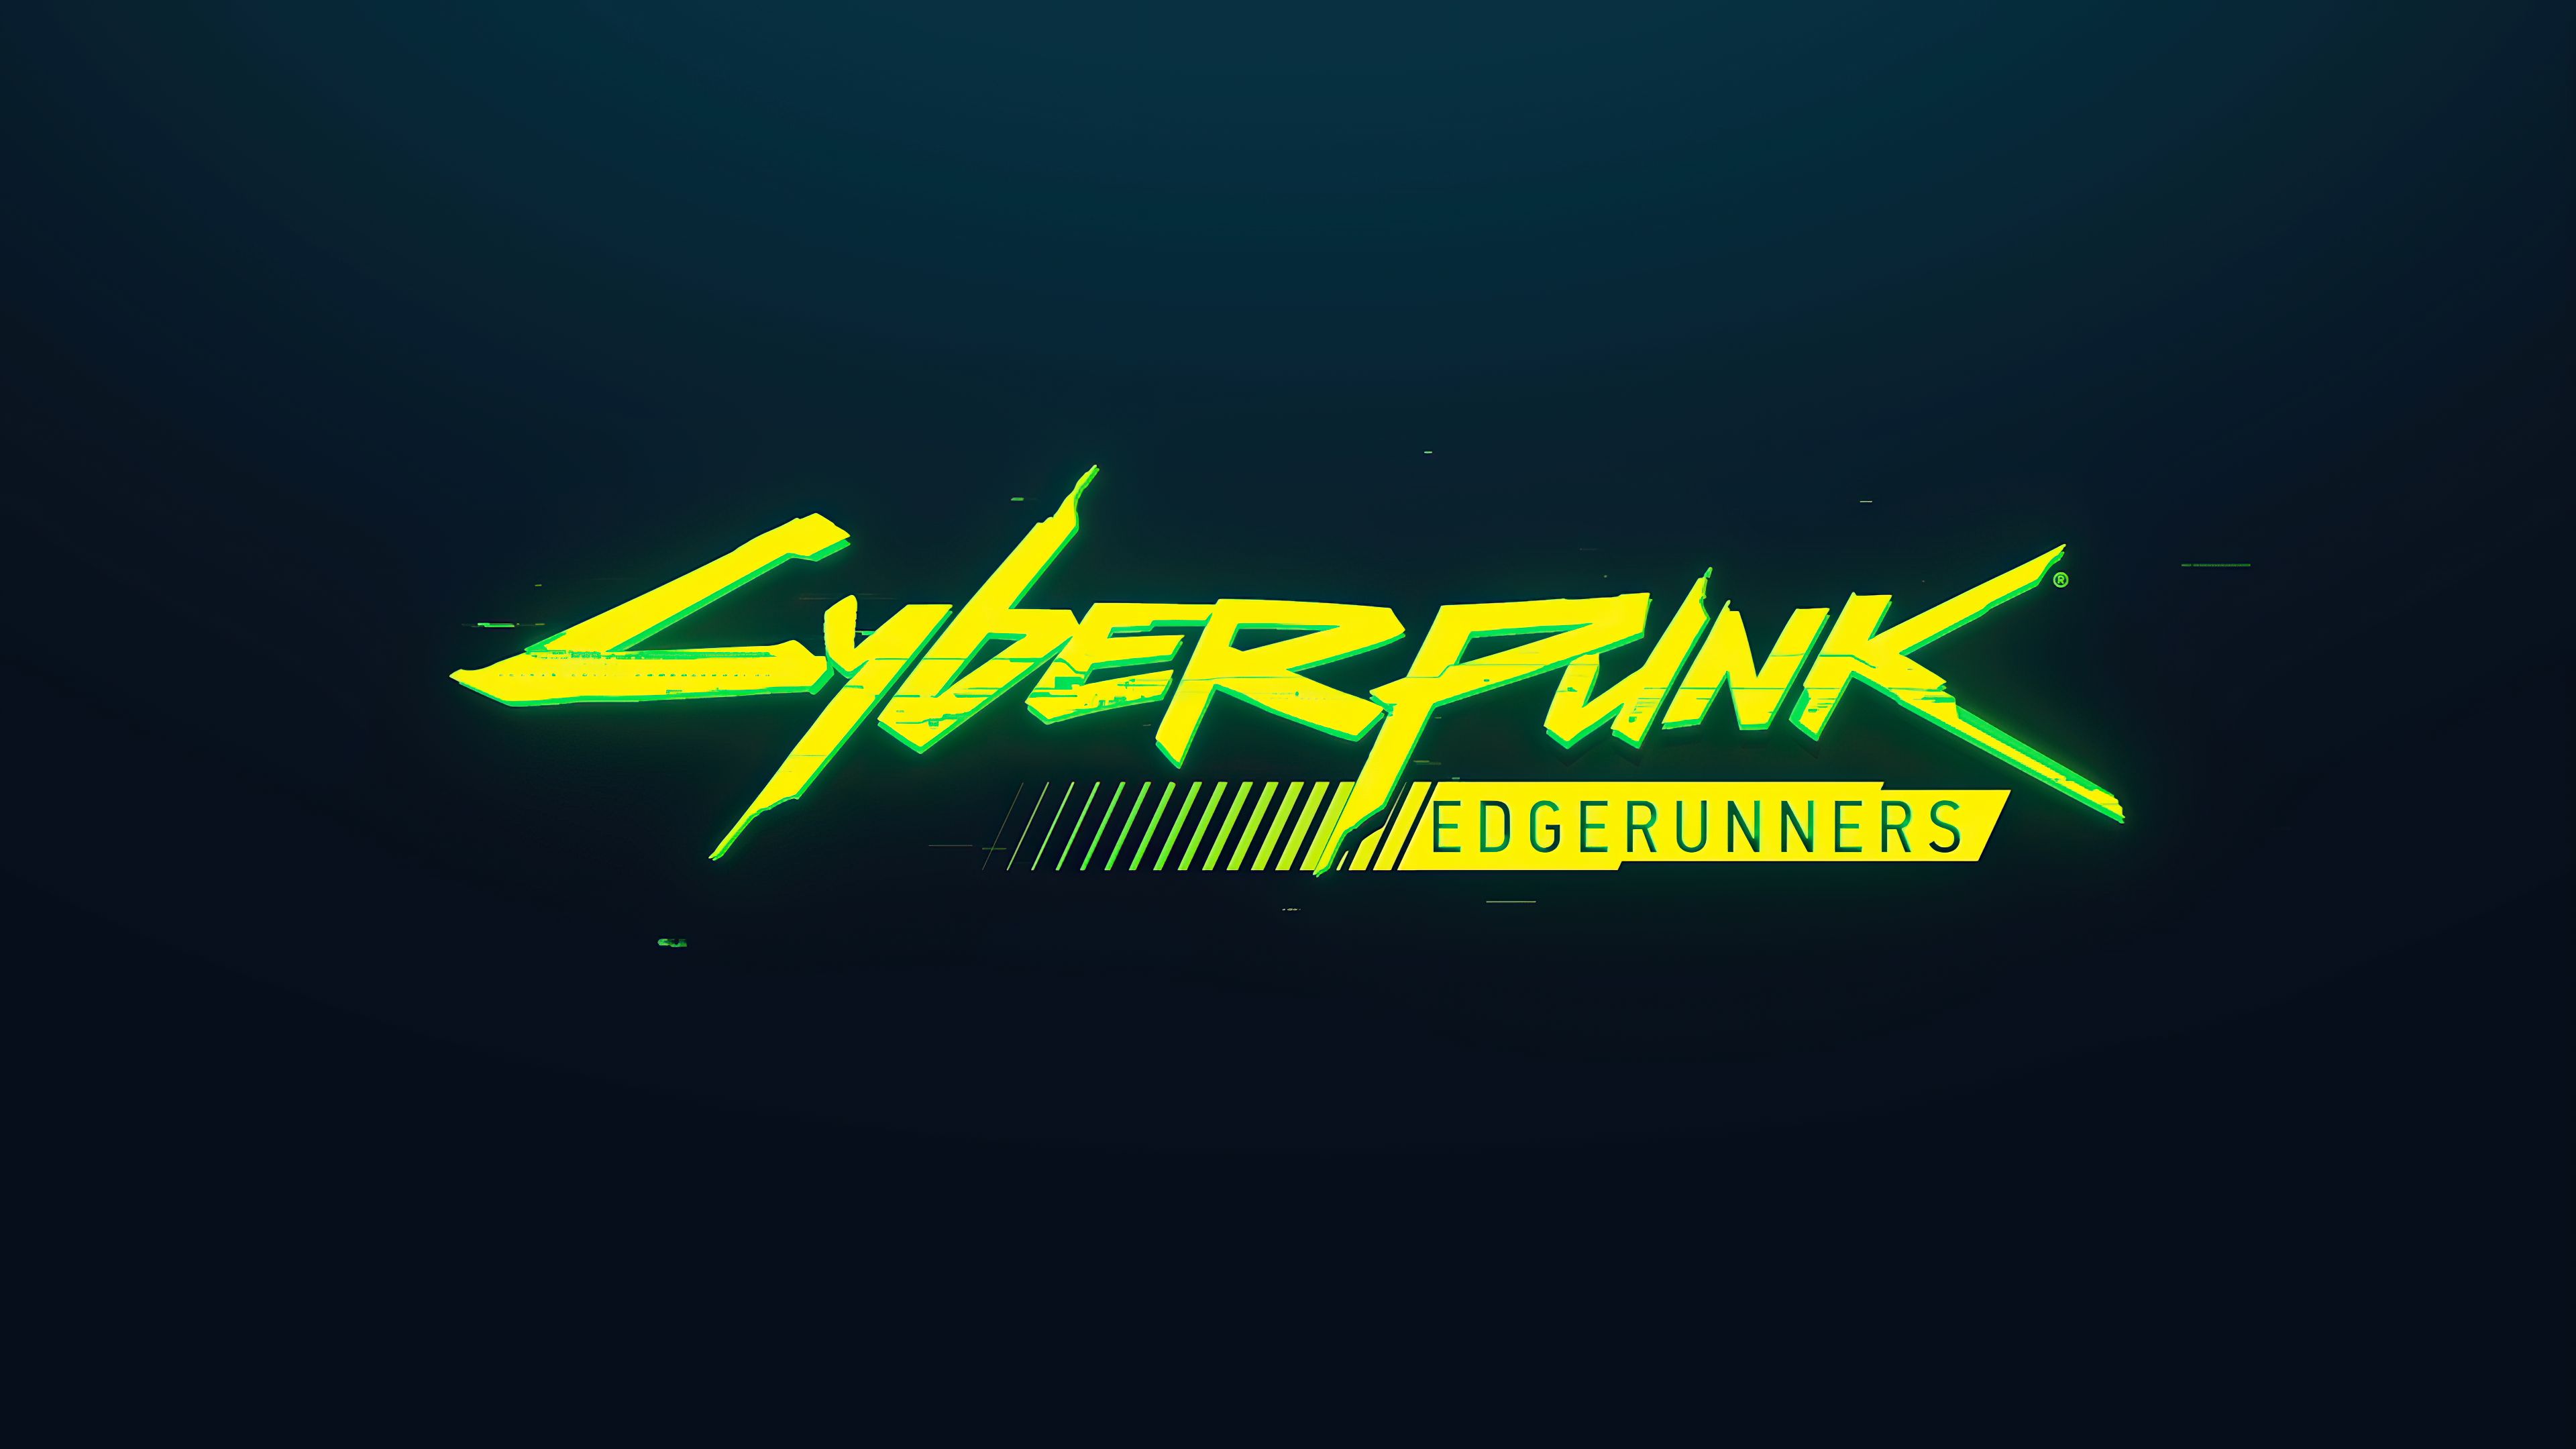 Cyberpunk Edgerunners Wallpapers - Top Free Cyberpunk Edgerunners